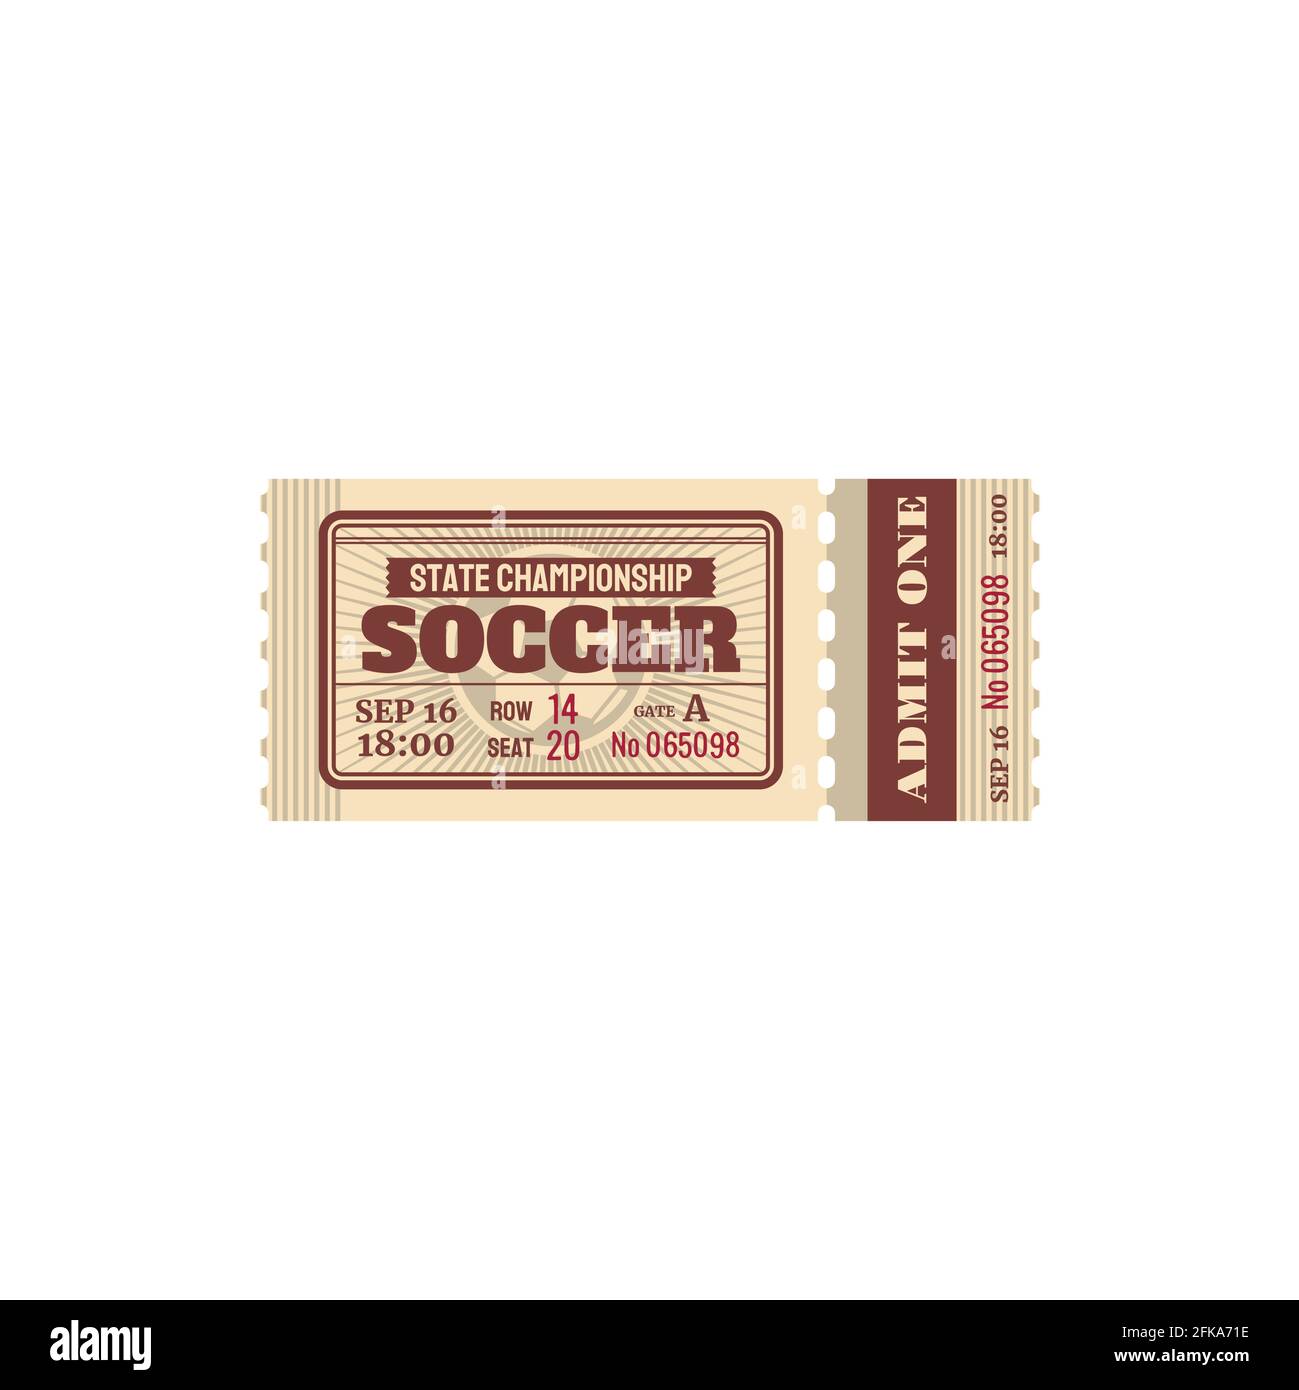 Ticket für Fußball-Staatsmeisterschaft, Fußball-Spiel Vektorkarte mit Preis, Sitz und Gate-Nummer. Team-Match, Retro vintage Ticket Vorlage mit Perfo Stock Vektor